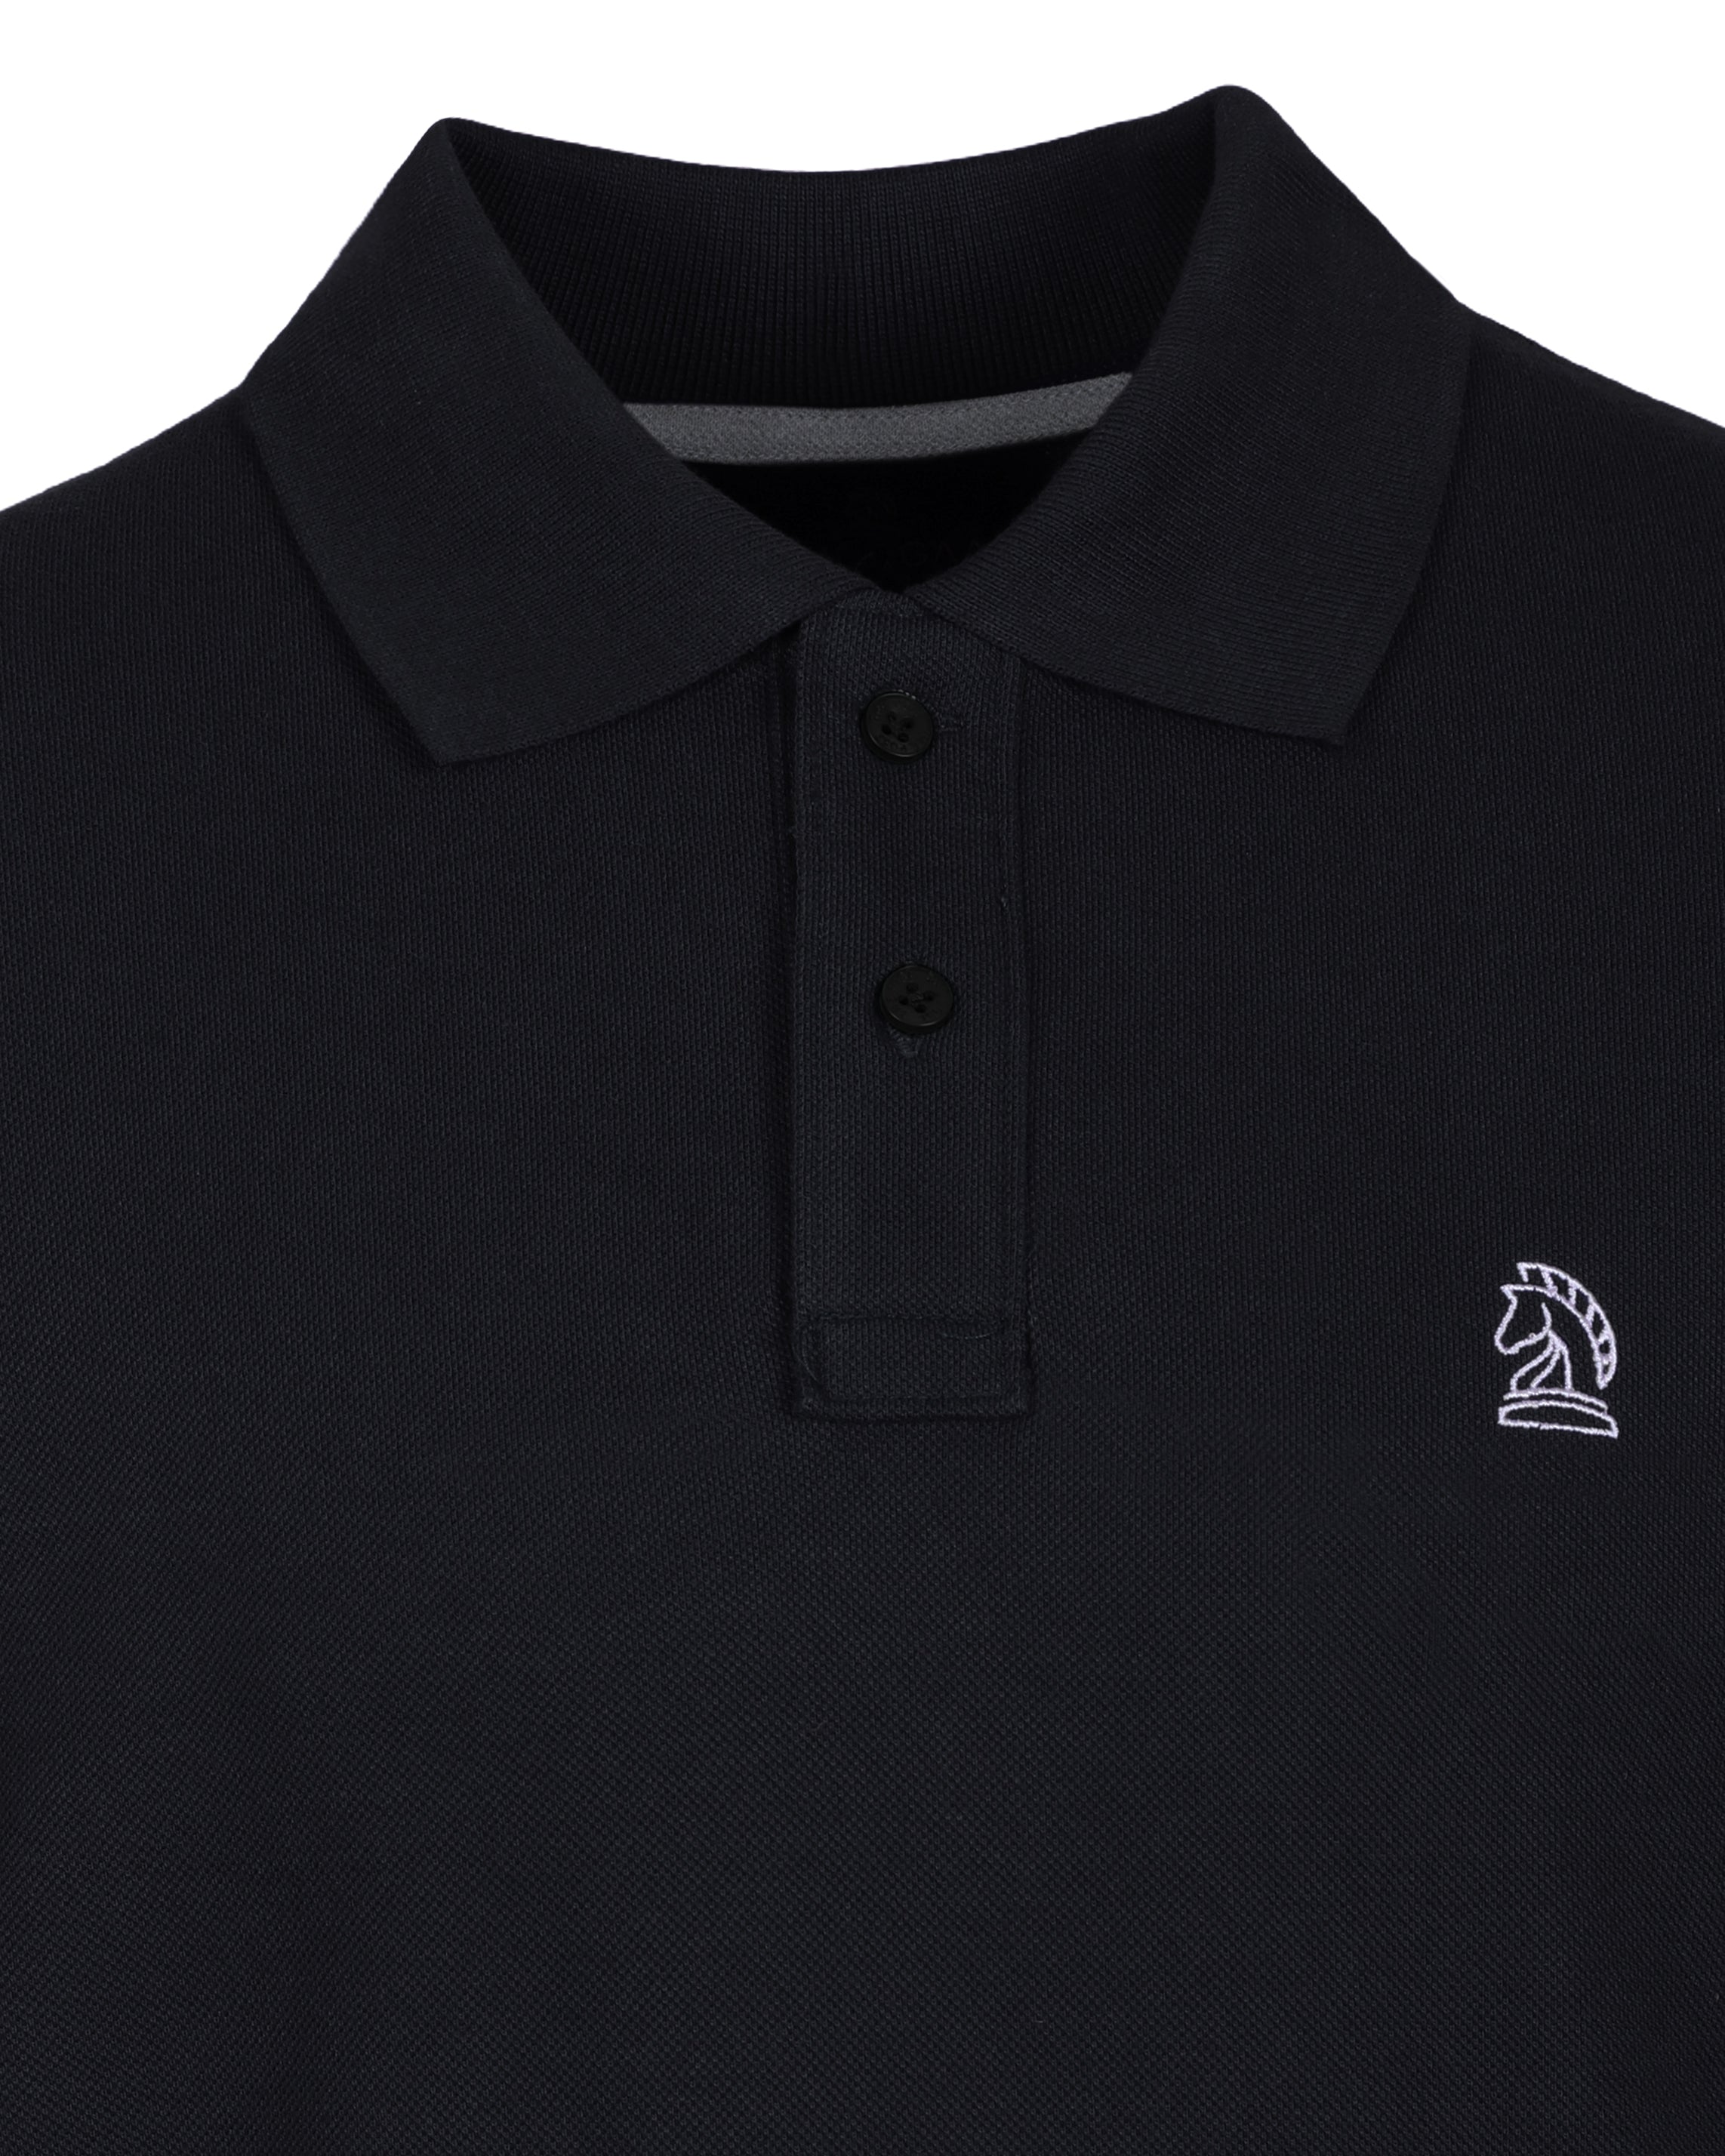 Black Color Premium Cotton T-Shirt